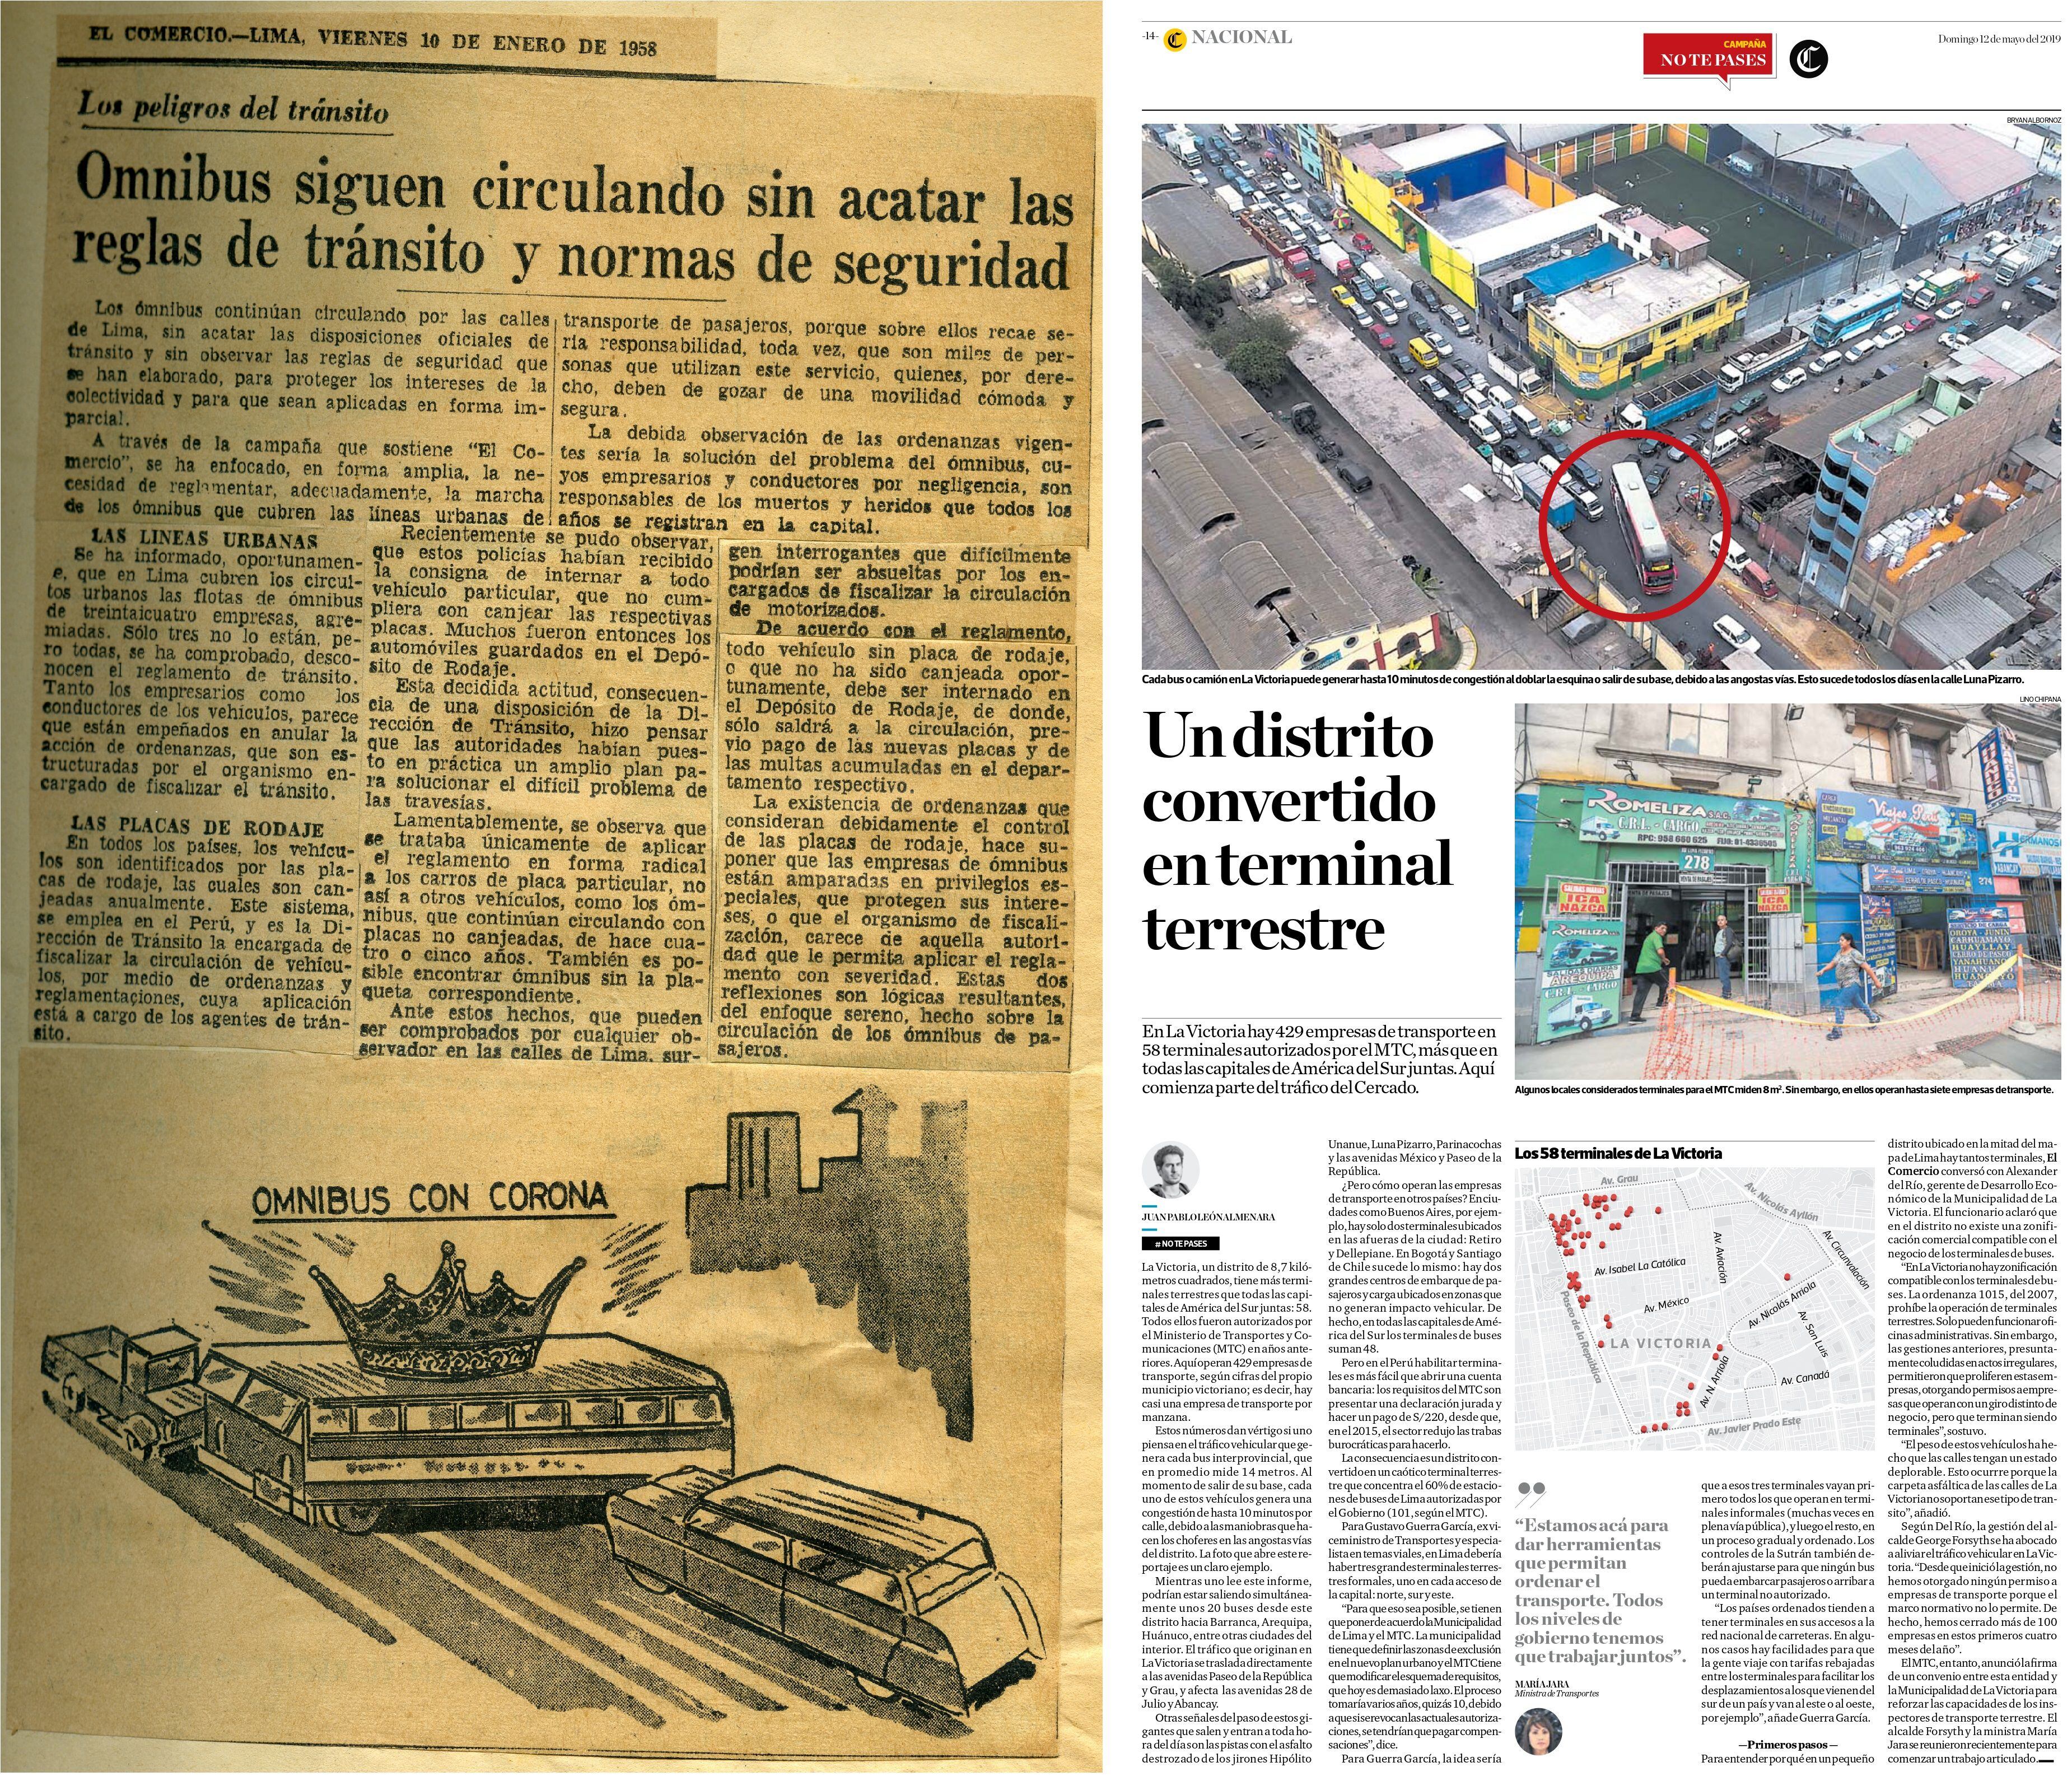 El problema que los terminales terrestres generan en el orden de la ciudad ha sido difundido por El Comercio desde hace más de 50 años.